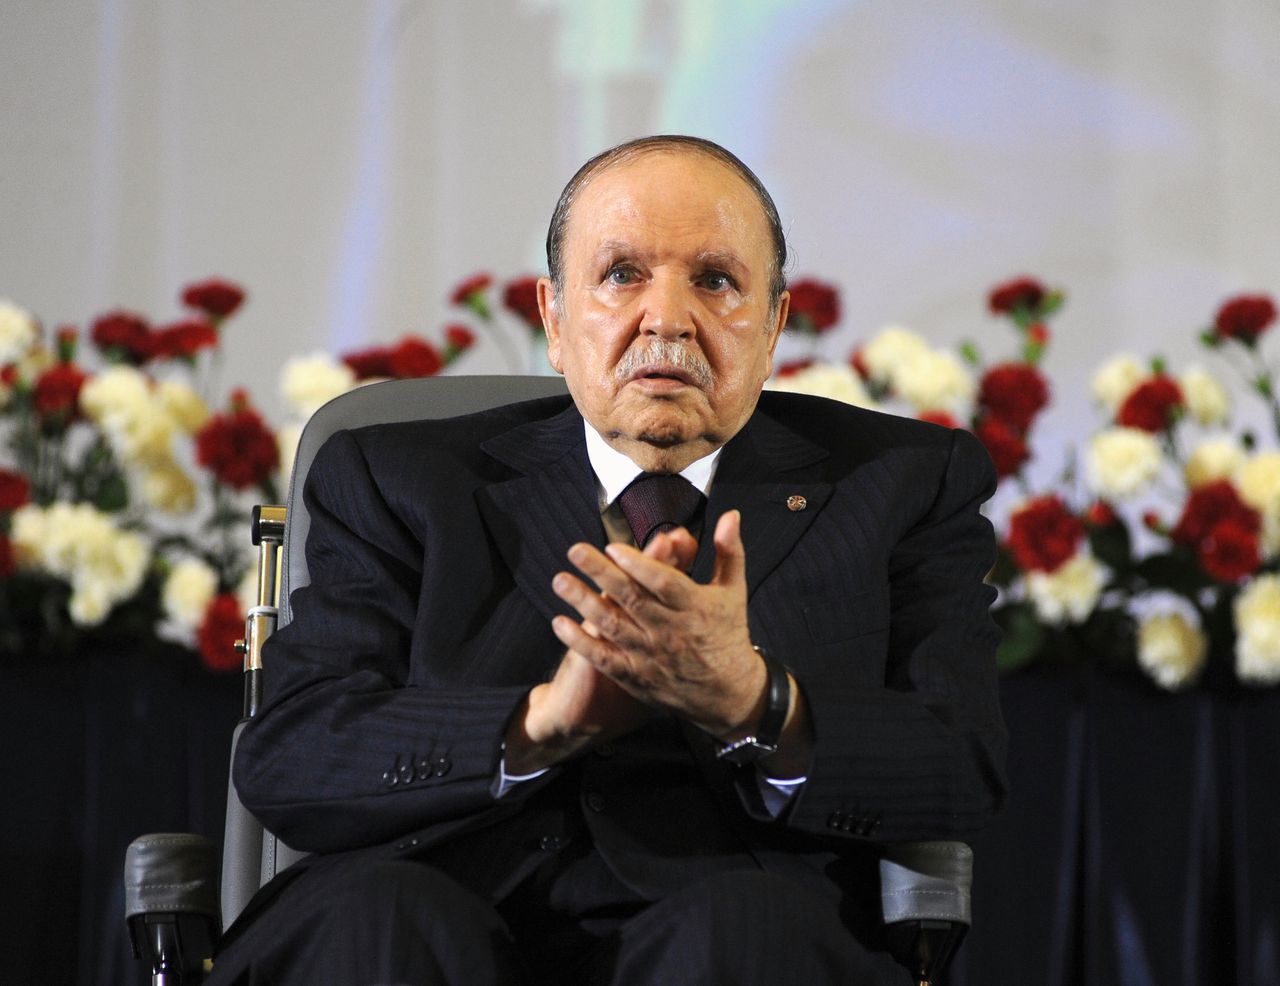 Archiefbeeld uit 2014. Aanvankelijk kandideerde Bouteflika zich voor een vijfde termijn, maar na grote protesten zag hij af van zijn herverkiezing.